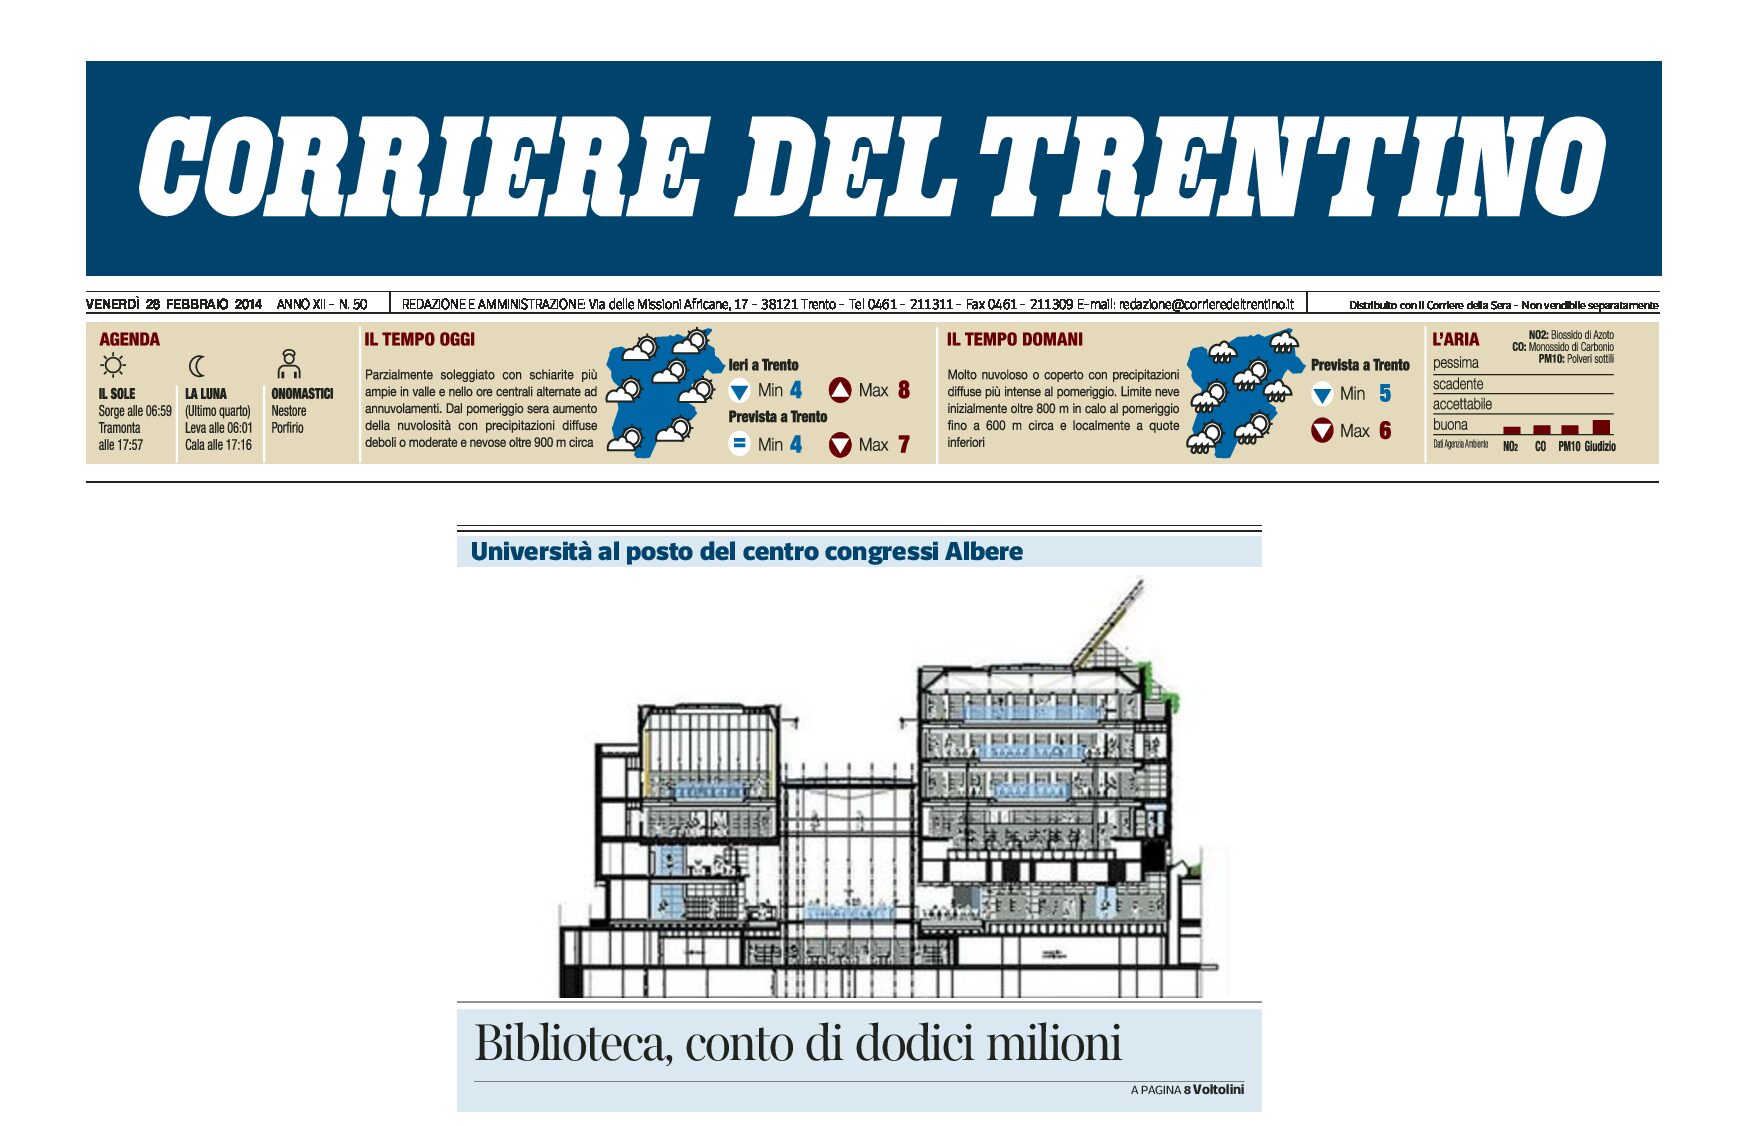 Trento: Biblioteca universitaria al posto del centro congressi Albere, costo aggiuntivo di 12 milioni di euro